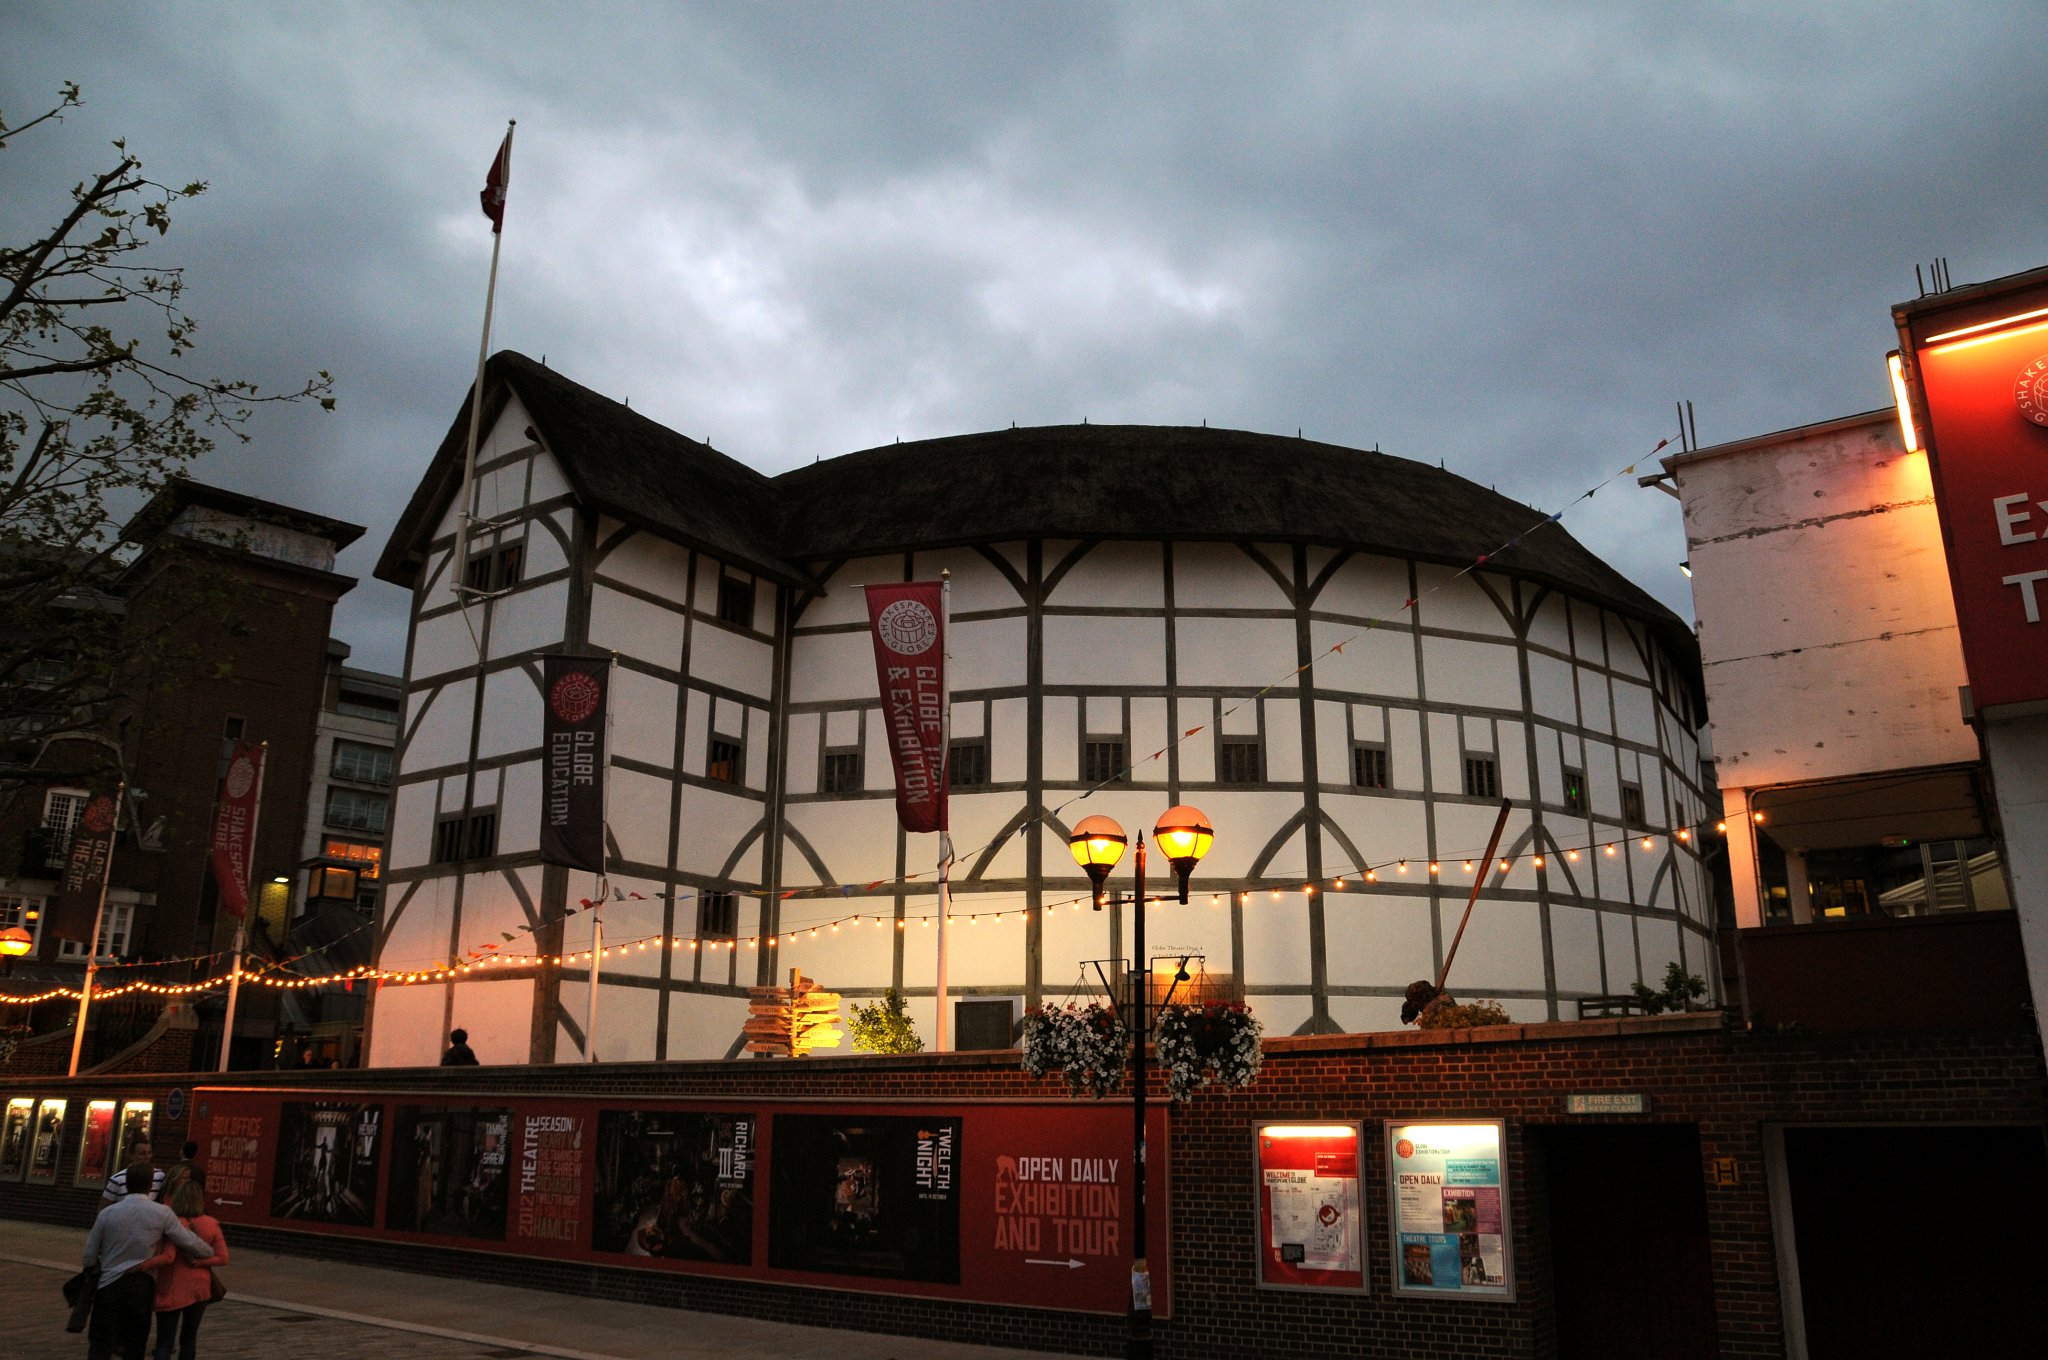 DSC_7674_1.jpg - Replika divadla Globe v Southwarku. Divadlo Globe je spjaté s osobou Williama Shakespeara. William Shakespeare byl členem a podílníkem divadelní společnosti nazývané Služebníci lorda komořího. Svá představení hráli v Divadle Jamese Burbage. Roku 1597 jim však nájem na divadlo vypršel, což znamenalo velké potíže. Bylo třeba něco podniknout. Divadelní společnost se rozhodla ukrást své vlastní divadlo na základě prošlé smlouvy, kde se psalo, že pokud budou chtít, mohou divadlo rozebrat. Divadlo přesunuli na jižní břeh řeky Temže a pojmenovali ho Globe. Byl to vynikající tah, Služebníci lorda komořího zachránili své divadlo i své kariéry. Jednu chybu však udělali, střechu nového divadla vyrobili z hořlavých došků. V létě roku 1613 Globe do základů vyhořel. Oheň způsobilo dělo, ze kterého vystřelili při představení. Dělo se nestrefilo a zapálilo doškovou střechu. Podílníci měli povinnost postavit nové divadlo. Tato verze Globu přežila 30 let, dokud nebylo divadlo z nařízení puritána Olivera Cromwella uzavřeno. Samotná budova byla v roce 1644 stržena.Ke konci 20. století byl po přestávce trvající 350 let postaven další Globe. Americký herec a Shakespearův milovník Sam Wanamaker (otec Zoë Wanamakerové) se rozhodl, že v Bankside postaví přesnou repliku Globu. Teď zde stojí divadlo tak, jak vypadalo za Shakespearových časů. V Globu probíhá každoročně letní sezona Shakespearových her a také je zde největší trvalá Shakespearova výstava na světě.